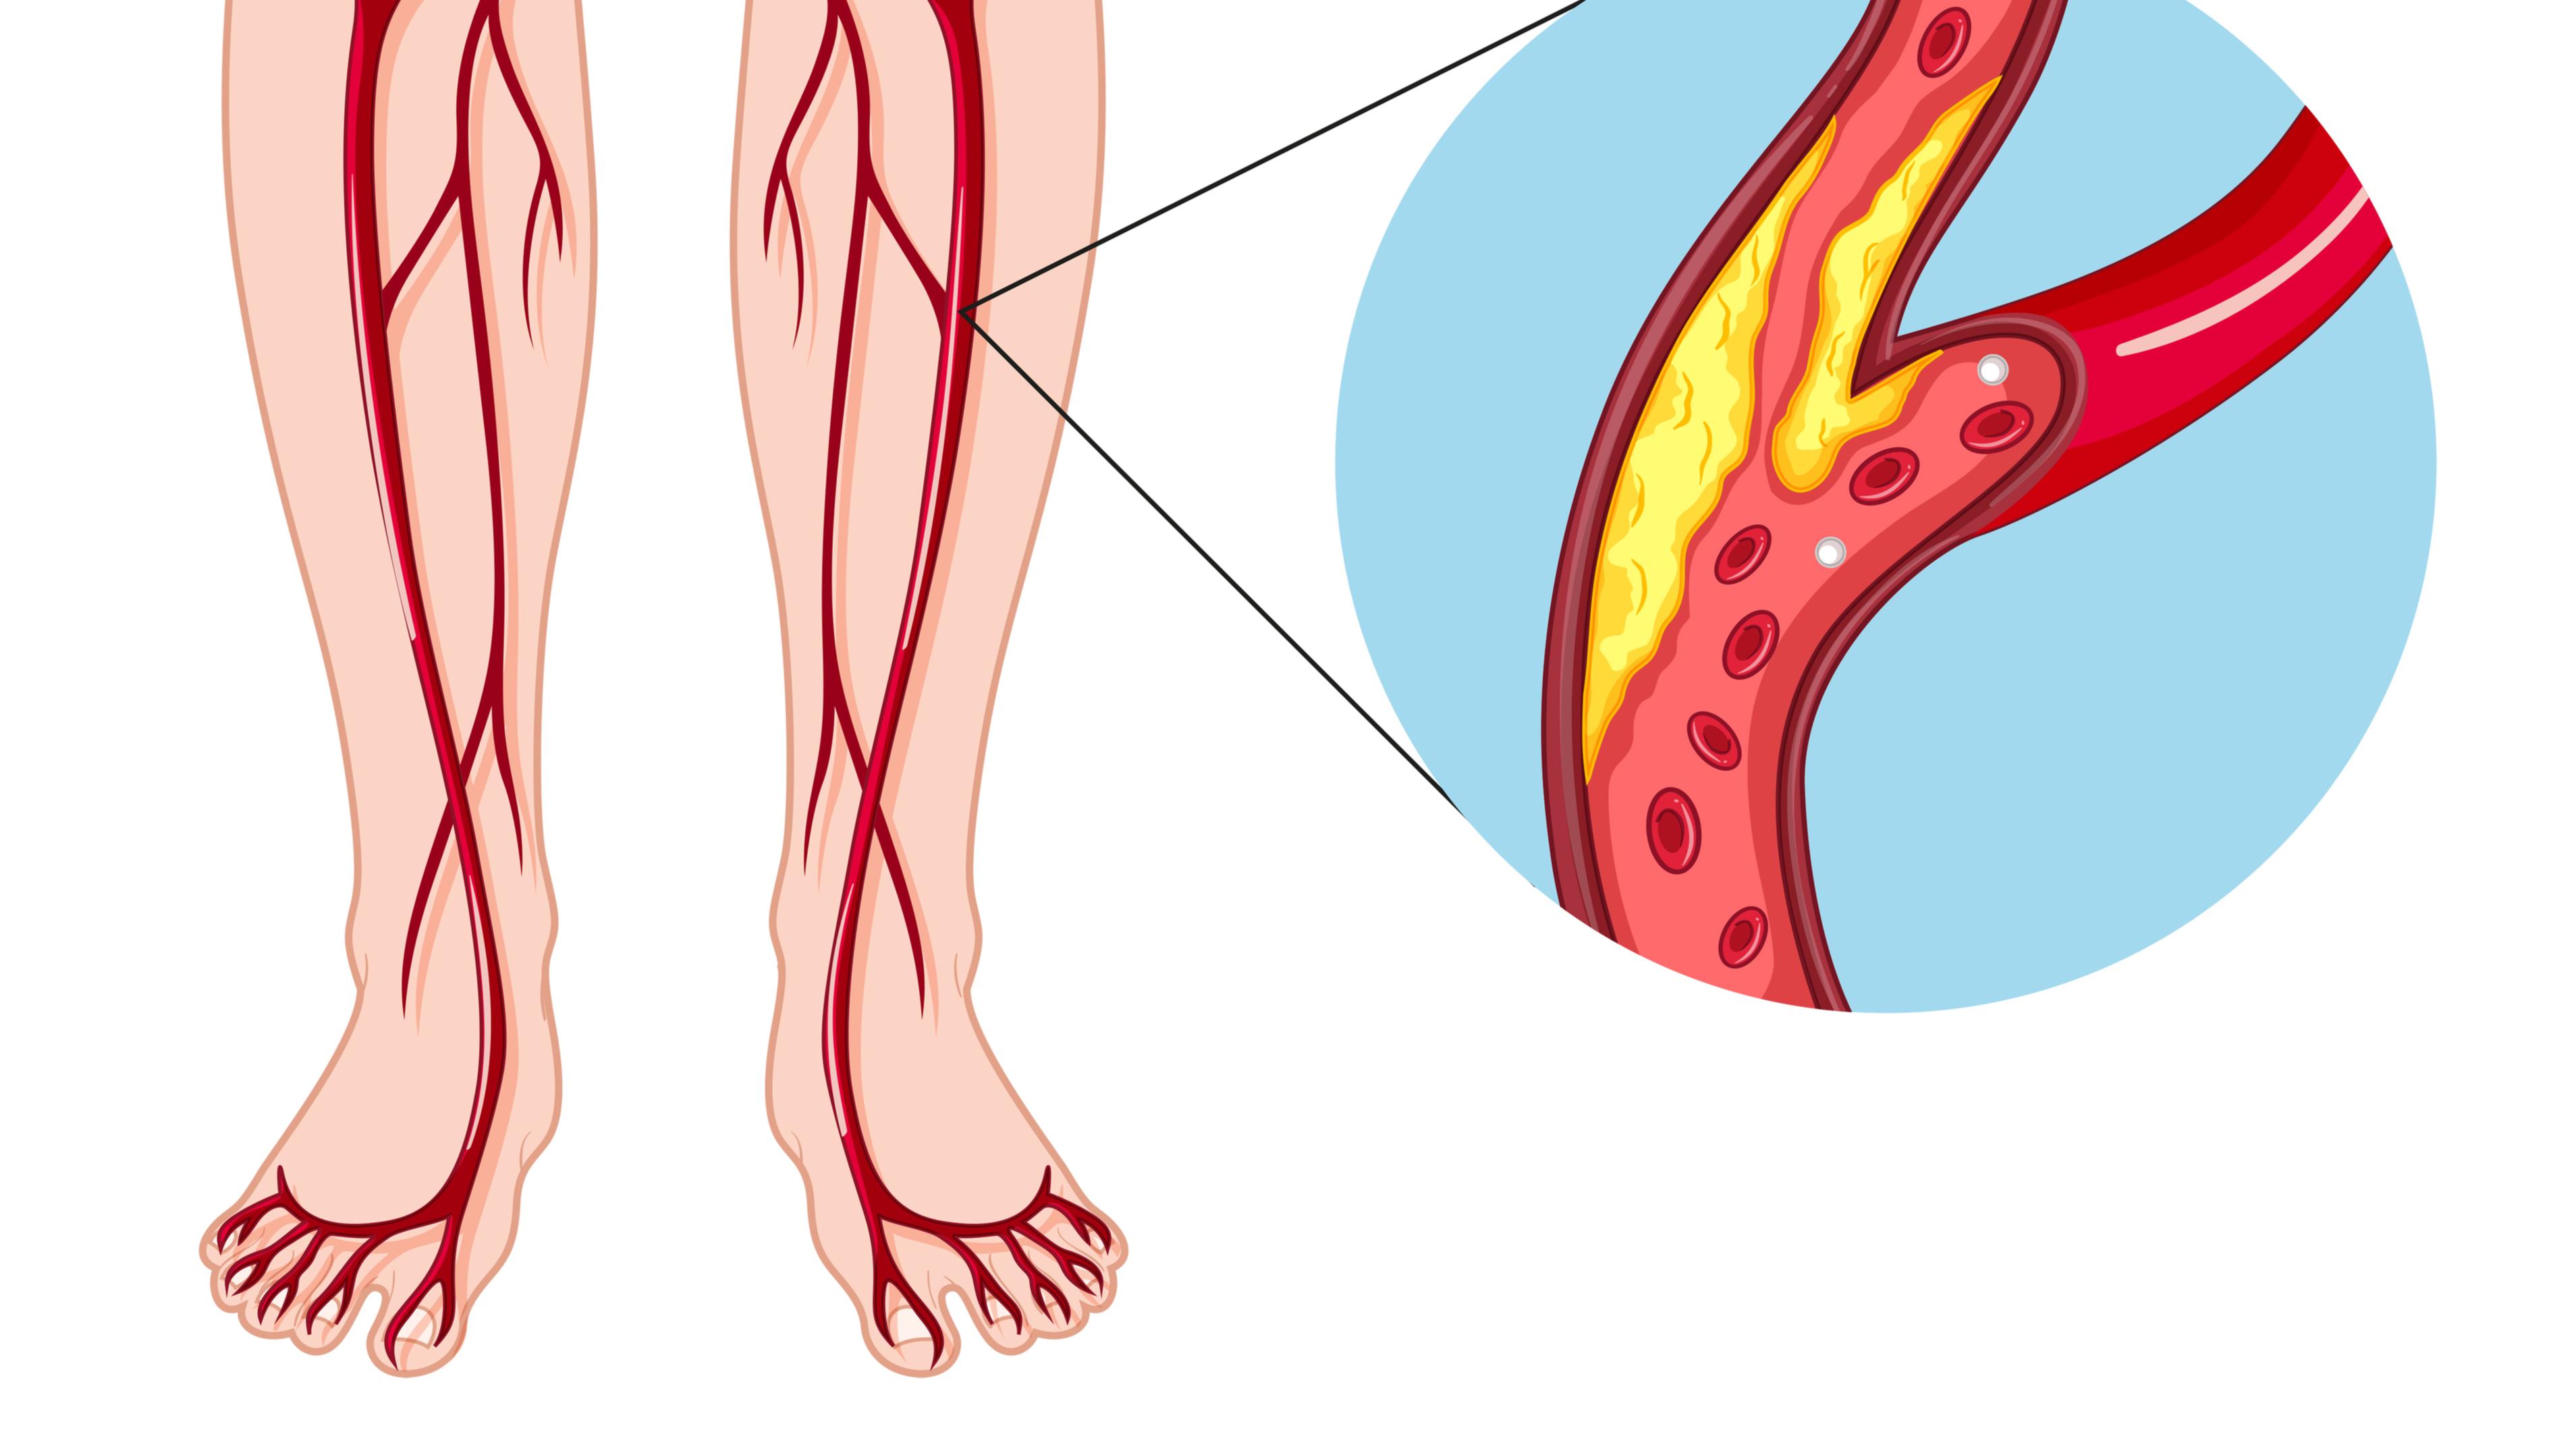 Лечение заболеваний артерий. Облитерирующий атеросклероз вен нижних конечностей. Облитерирующий атеросклероз сосудов конечностей. Облитерирующий атеросклероз сосудов ног. Атеросклероз артерий нижних конечностей.